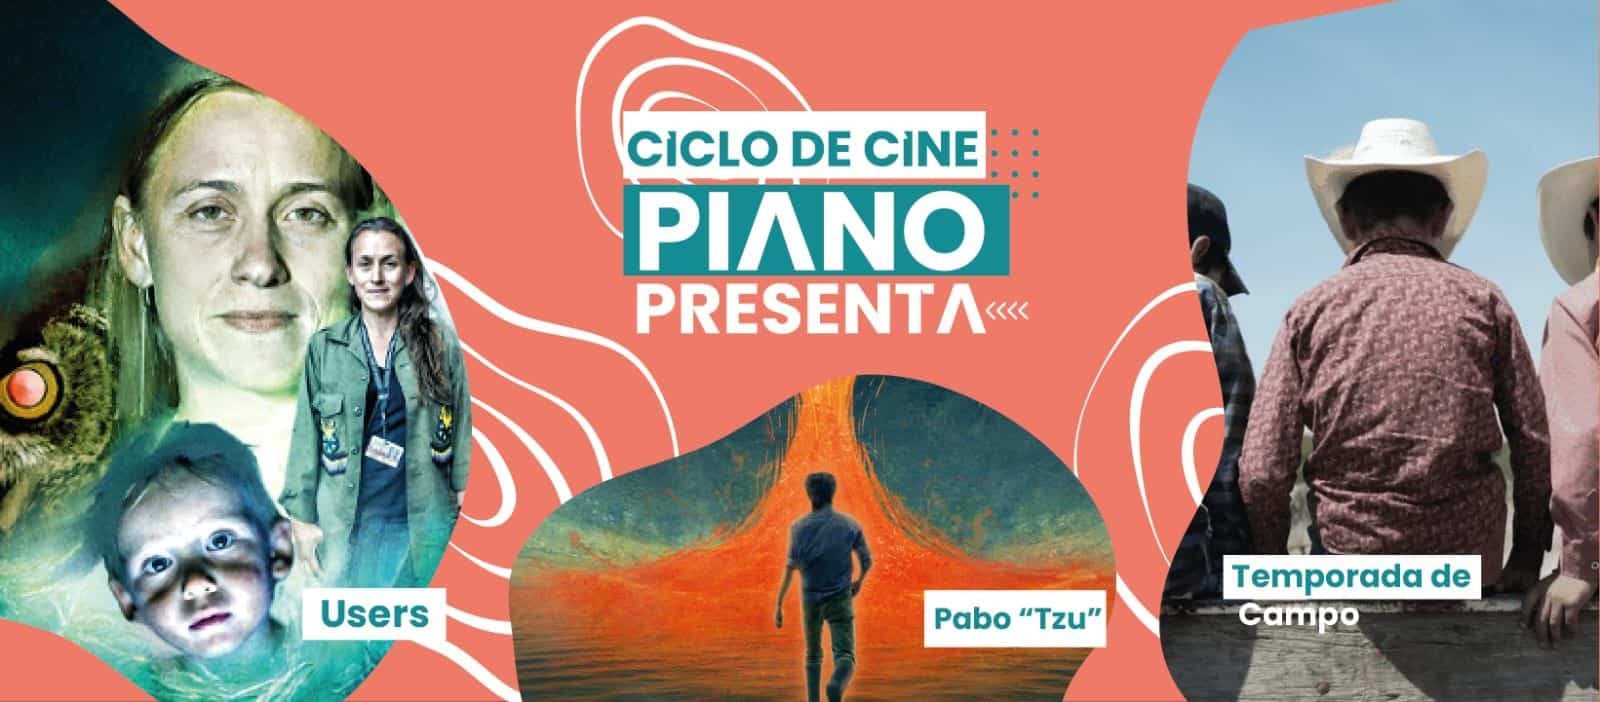 Invitan a funciones gratuitas de cine en Juárez y Chihuahua